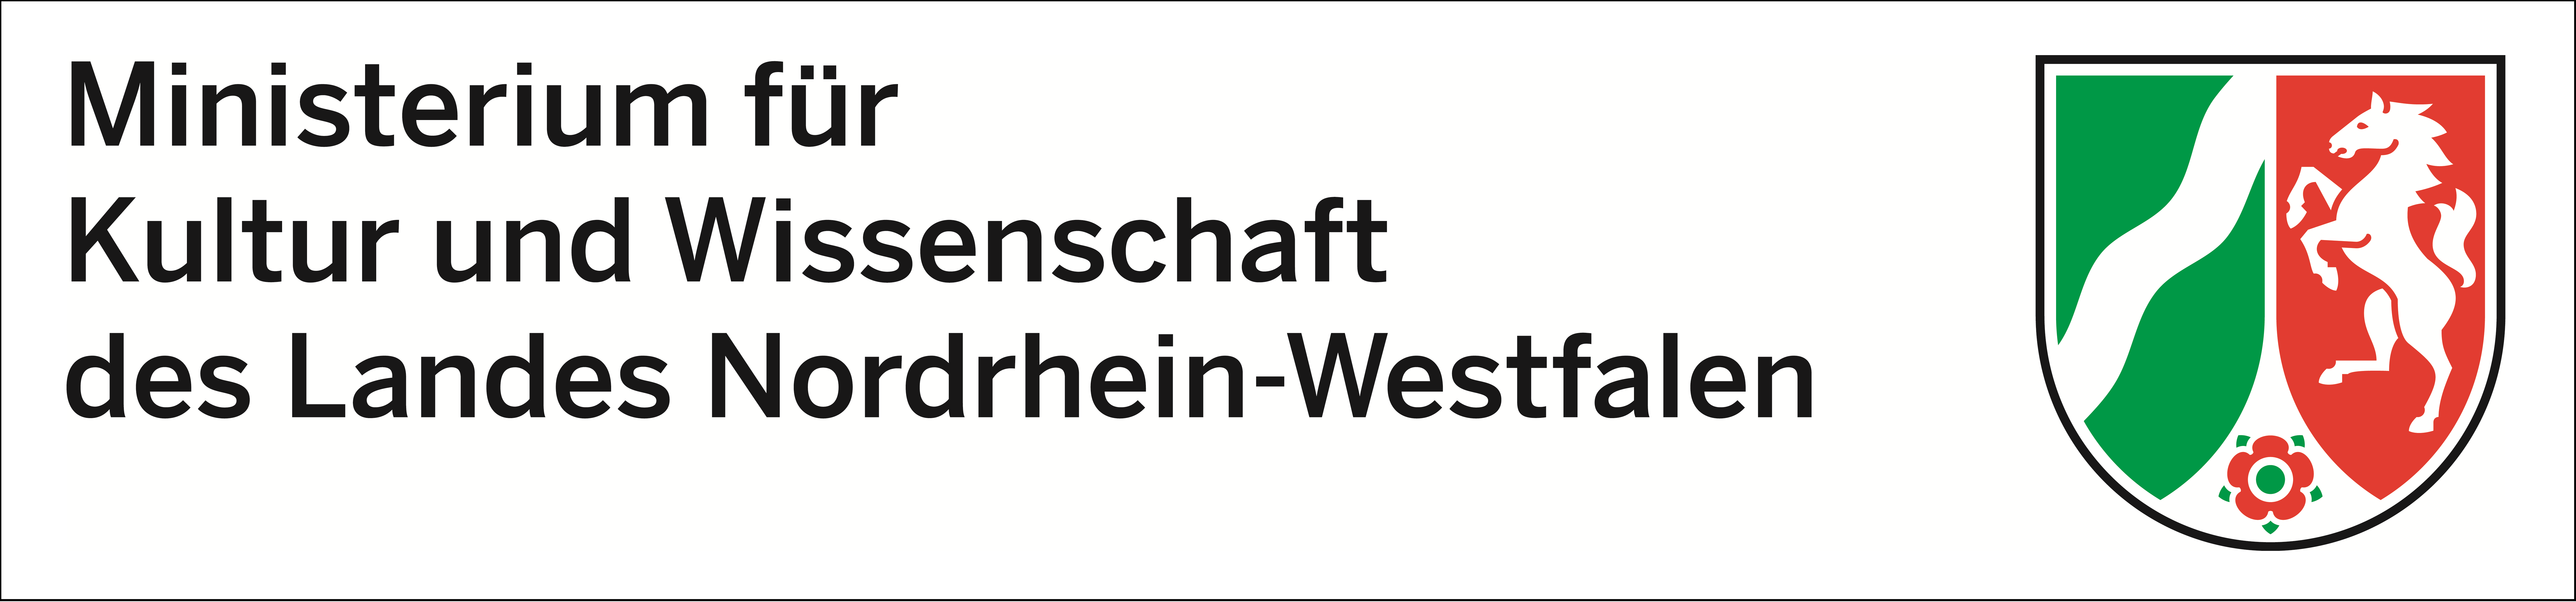 Das Logo besteht aus dem Wappen von NRW und dem Schriftzug "Ministerium für Kultur und Wissenschaft des Landes Nordrhein-Westfalen".